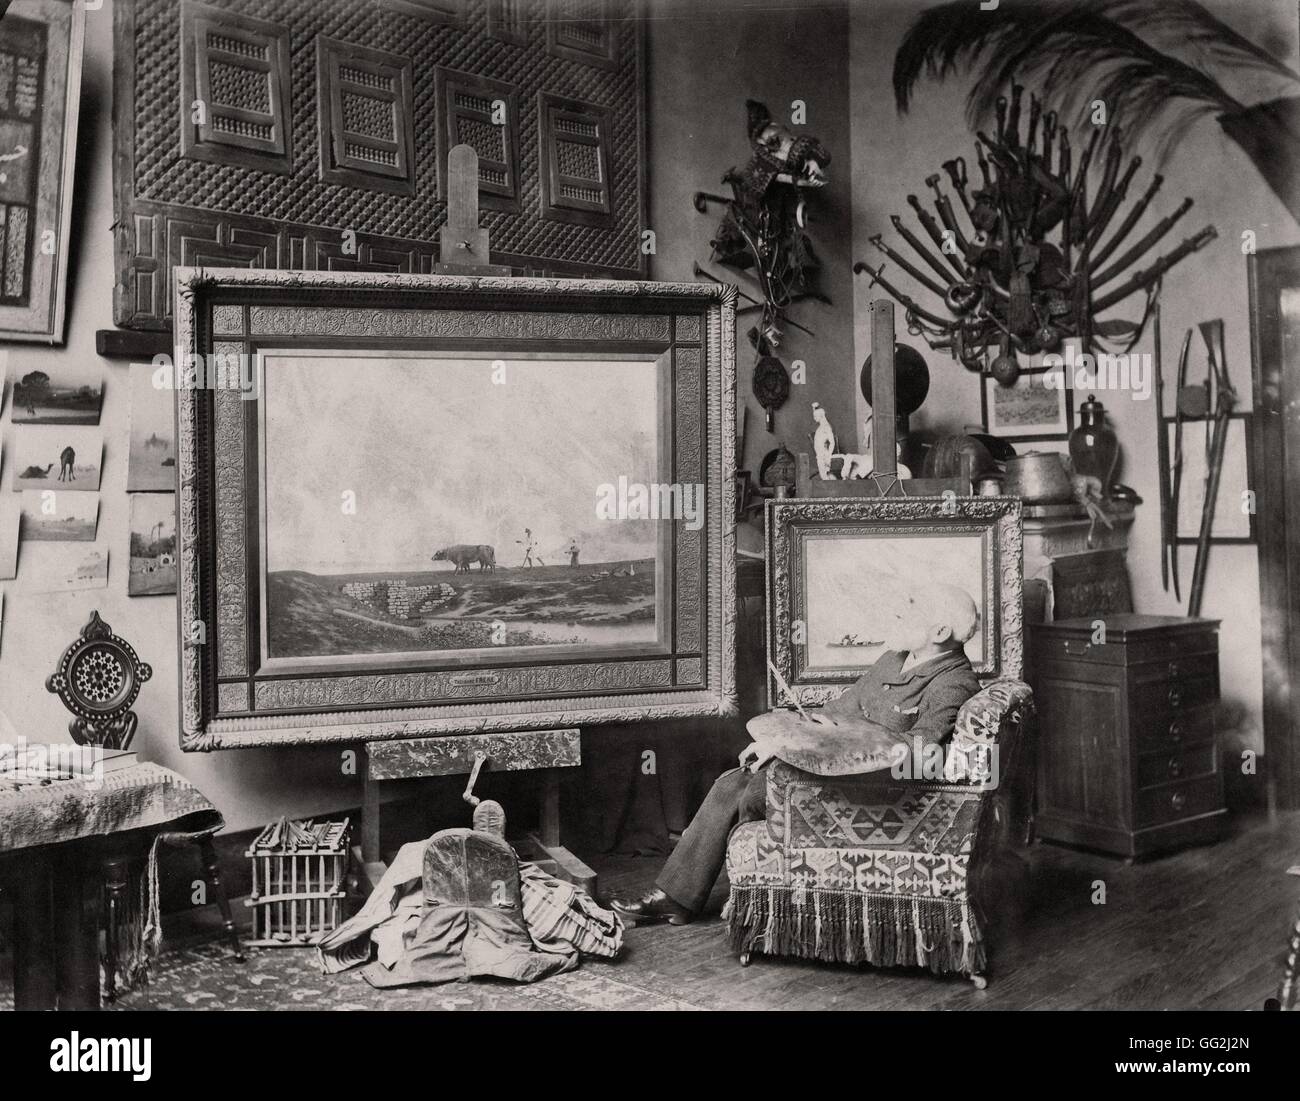 Französischer Maler Charles Théodore Frère in seinem Atelier in Paris. Foto von Edmond Bénard c.1885. Albumen print. Stockfoto